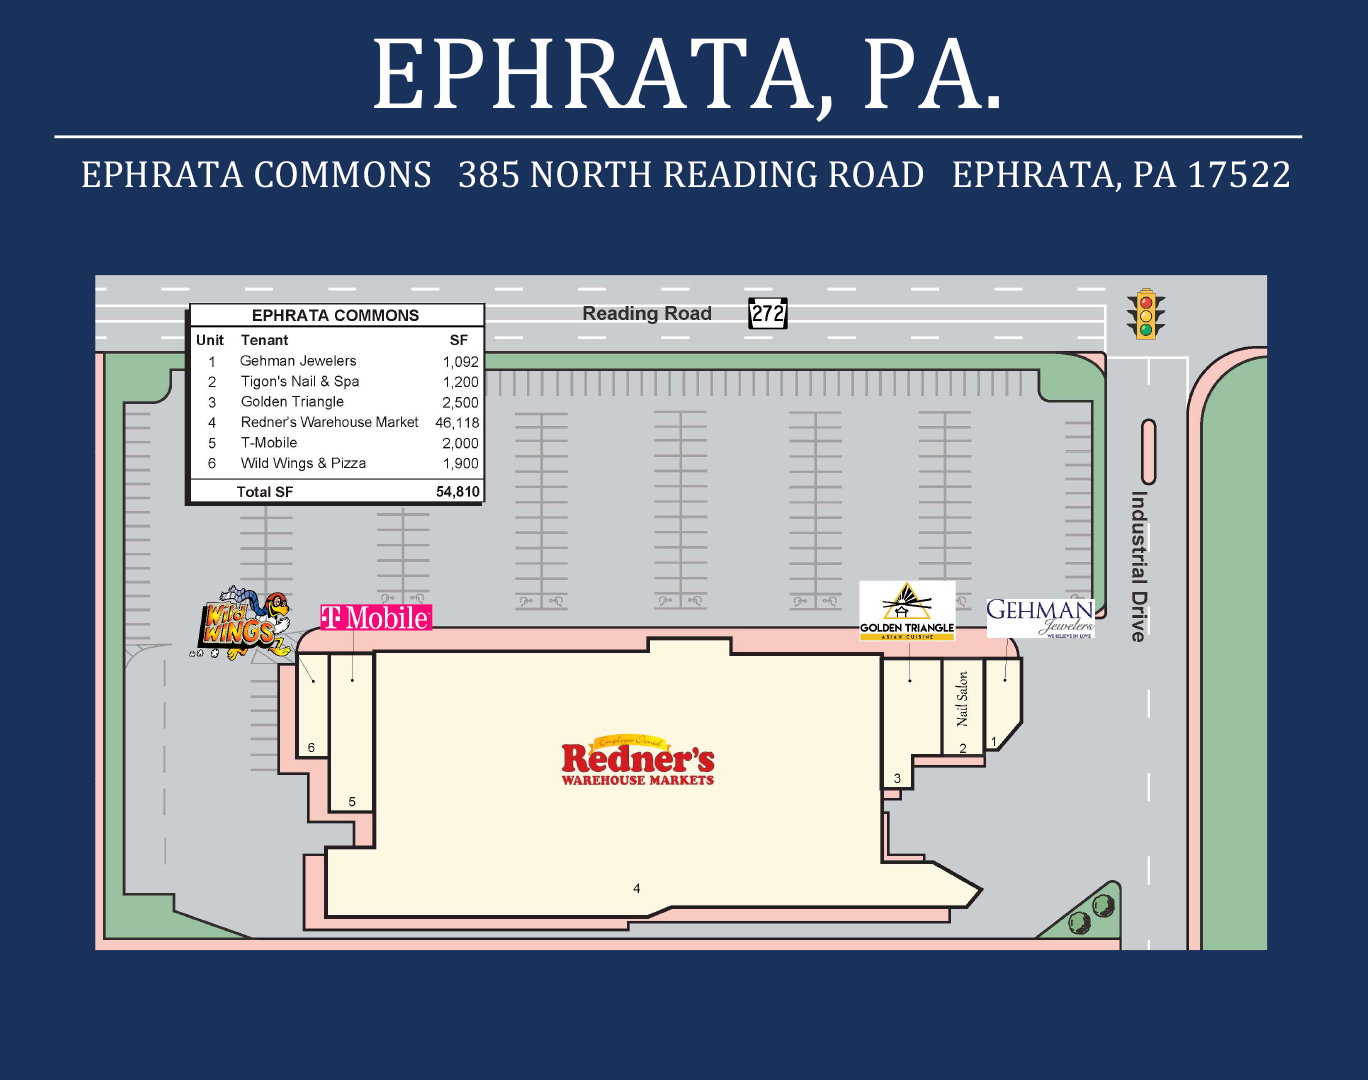 Ephrata Commons